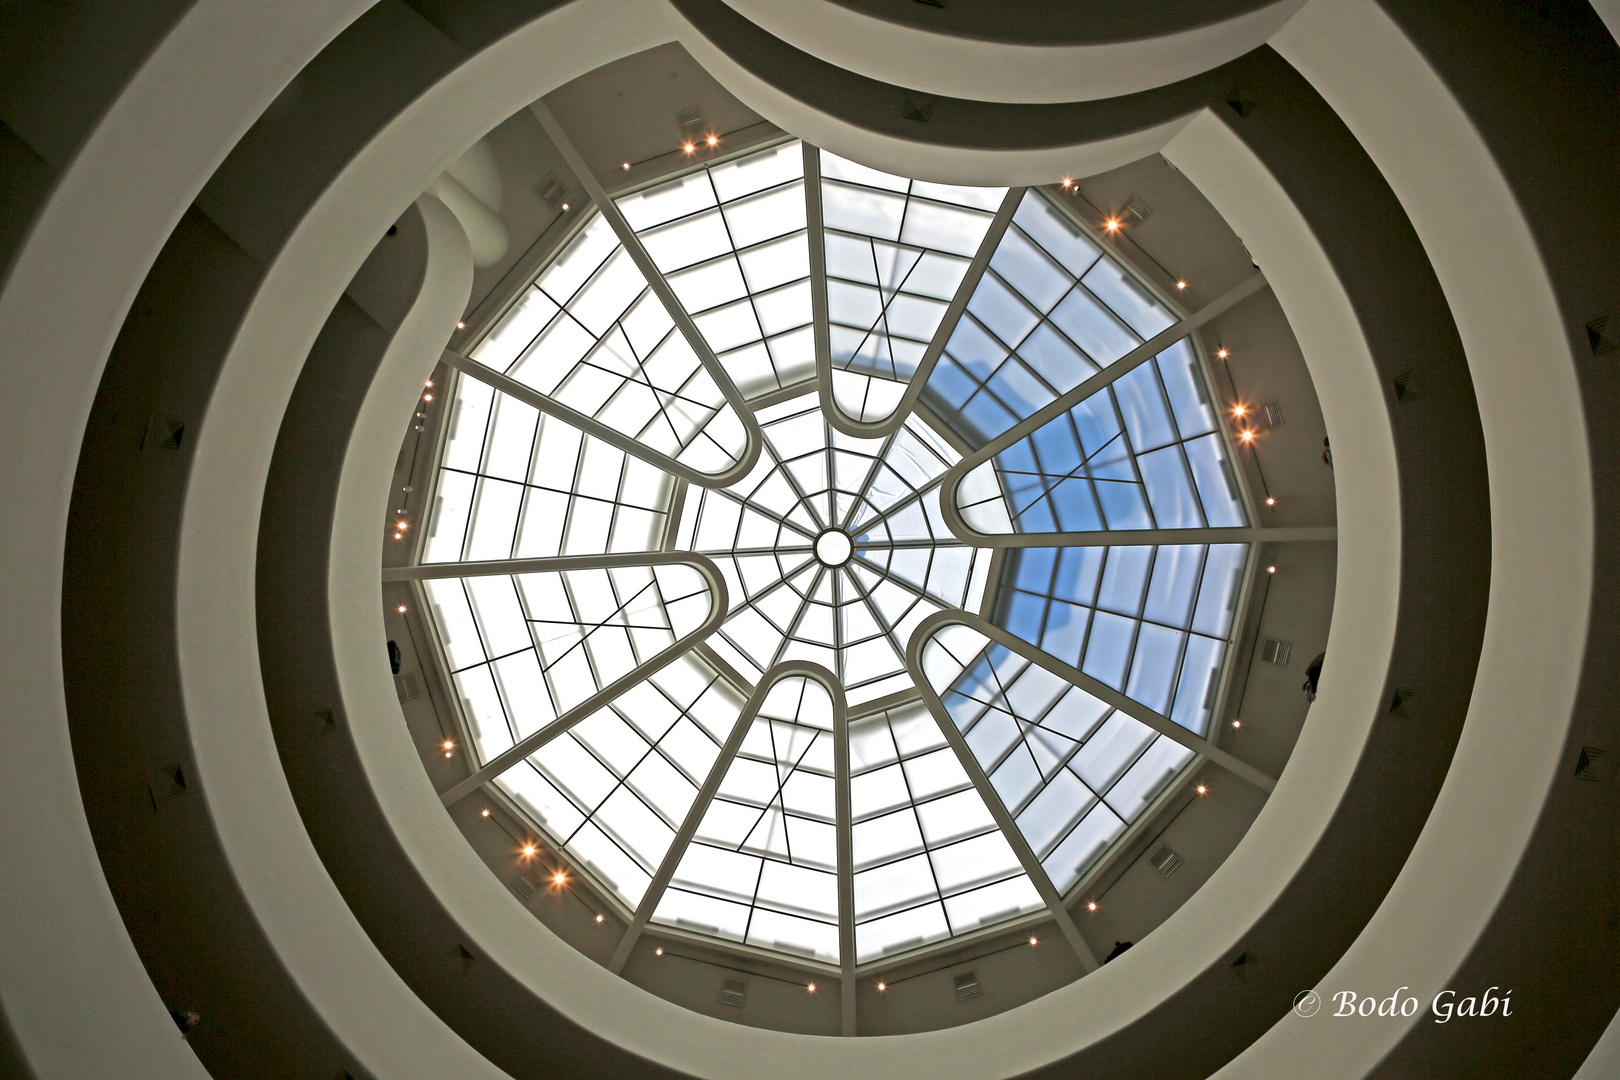 Die Kuppel des Guggenheim